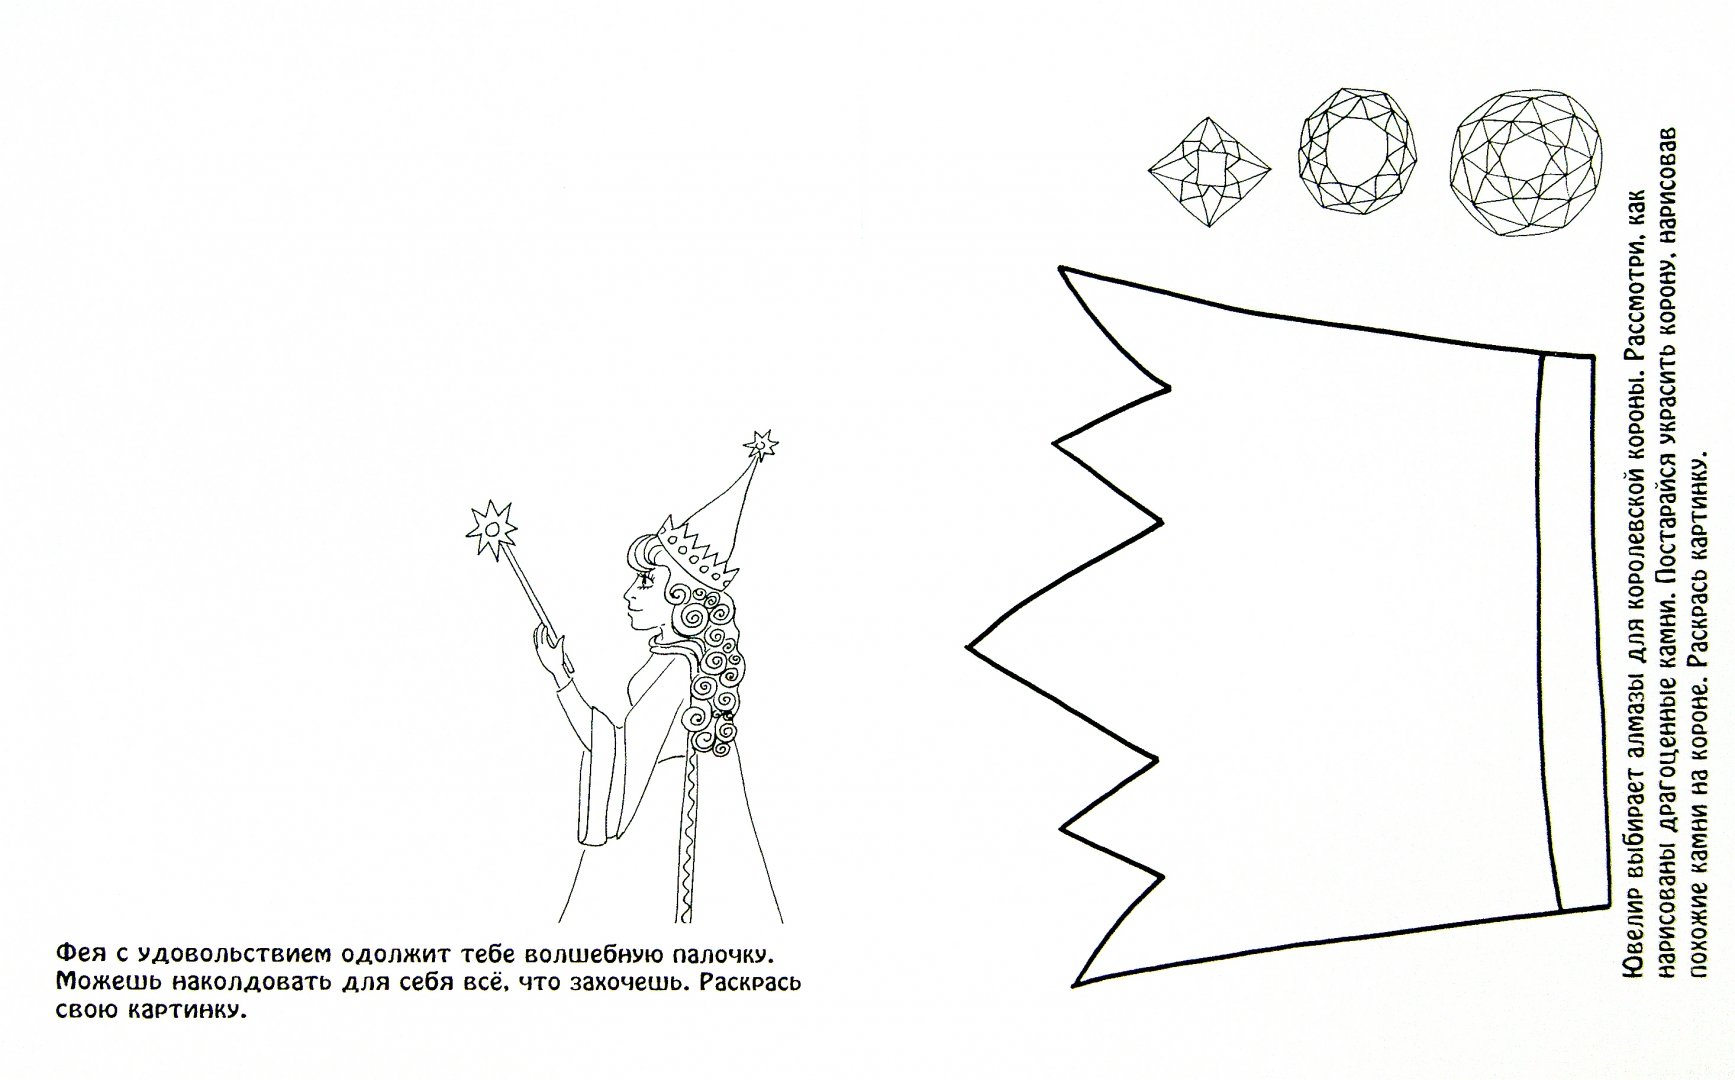 Иллюстрация 1 из 4 для Мир волшебства и магии | Лабиринт - книги. Источник: Лабиринт